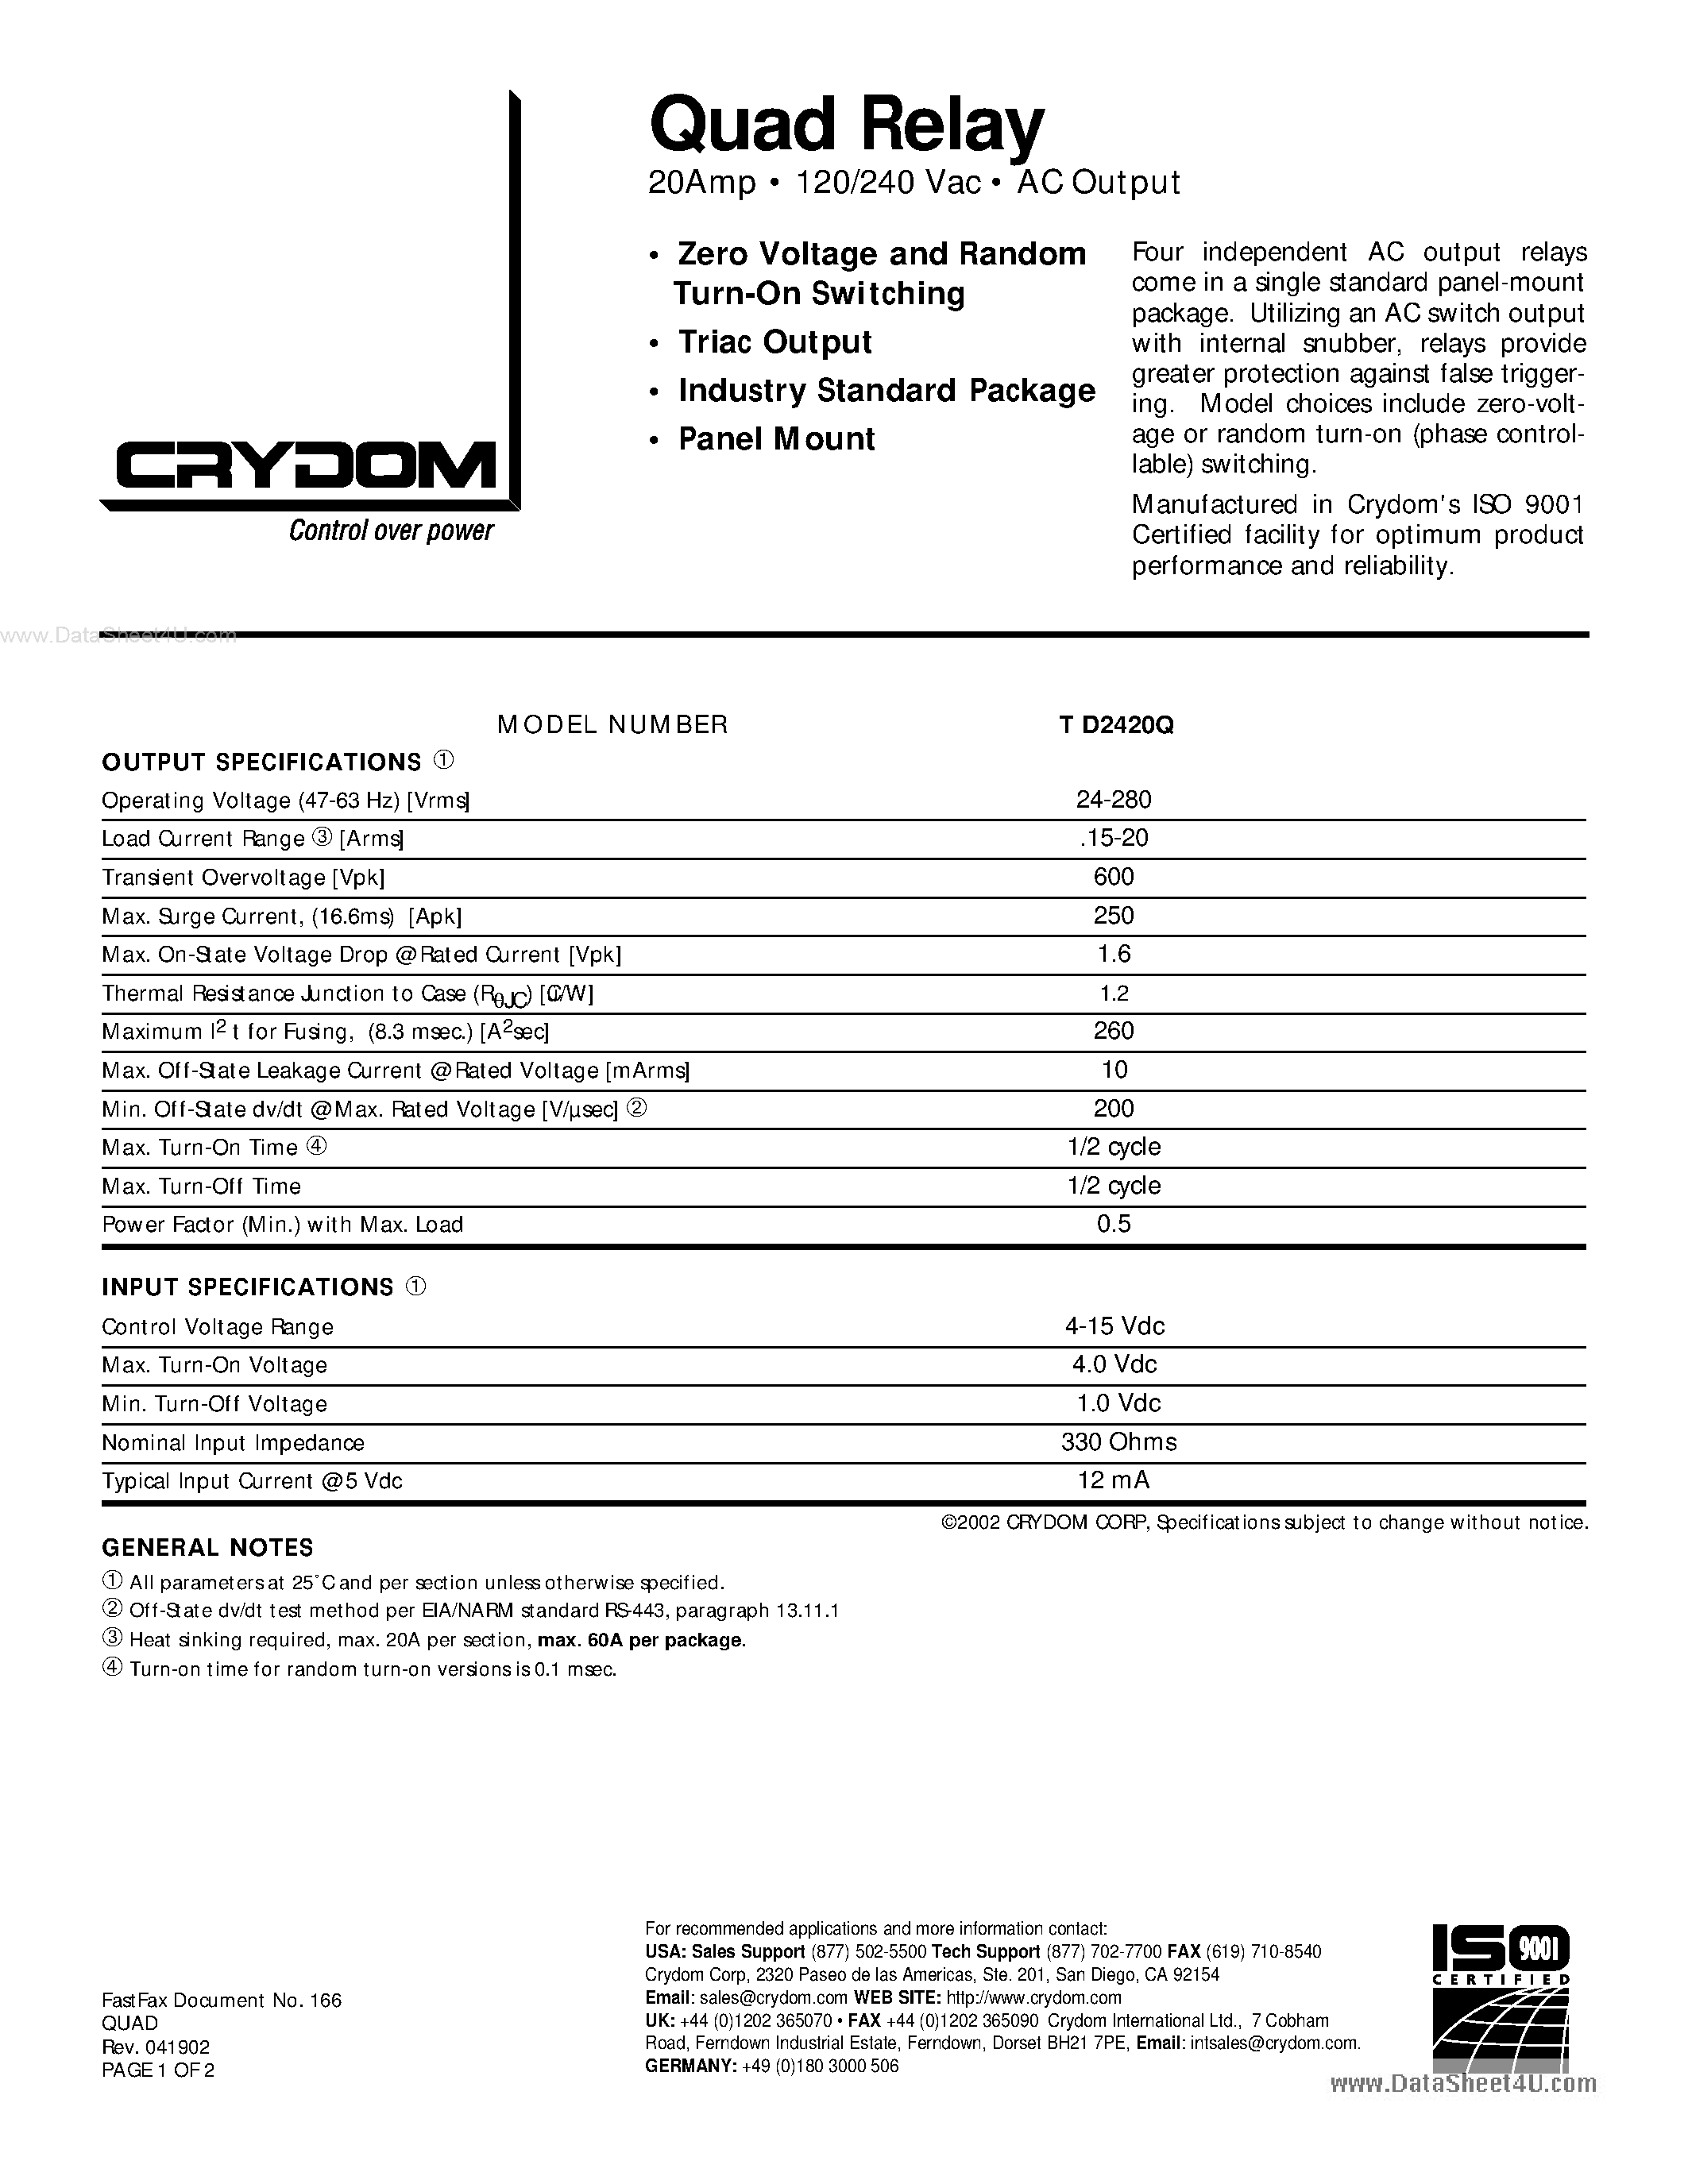 Даташит TD2420Q - 20Amp 120/240 Vac AC Output страница 1